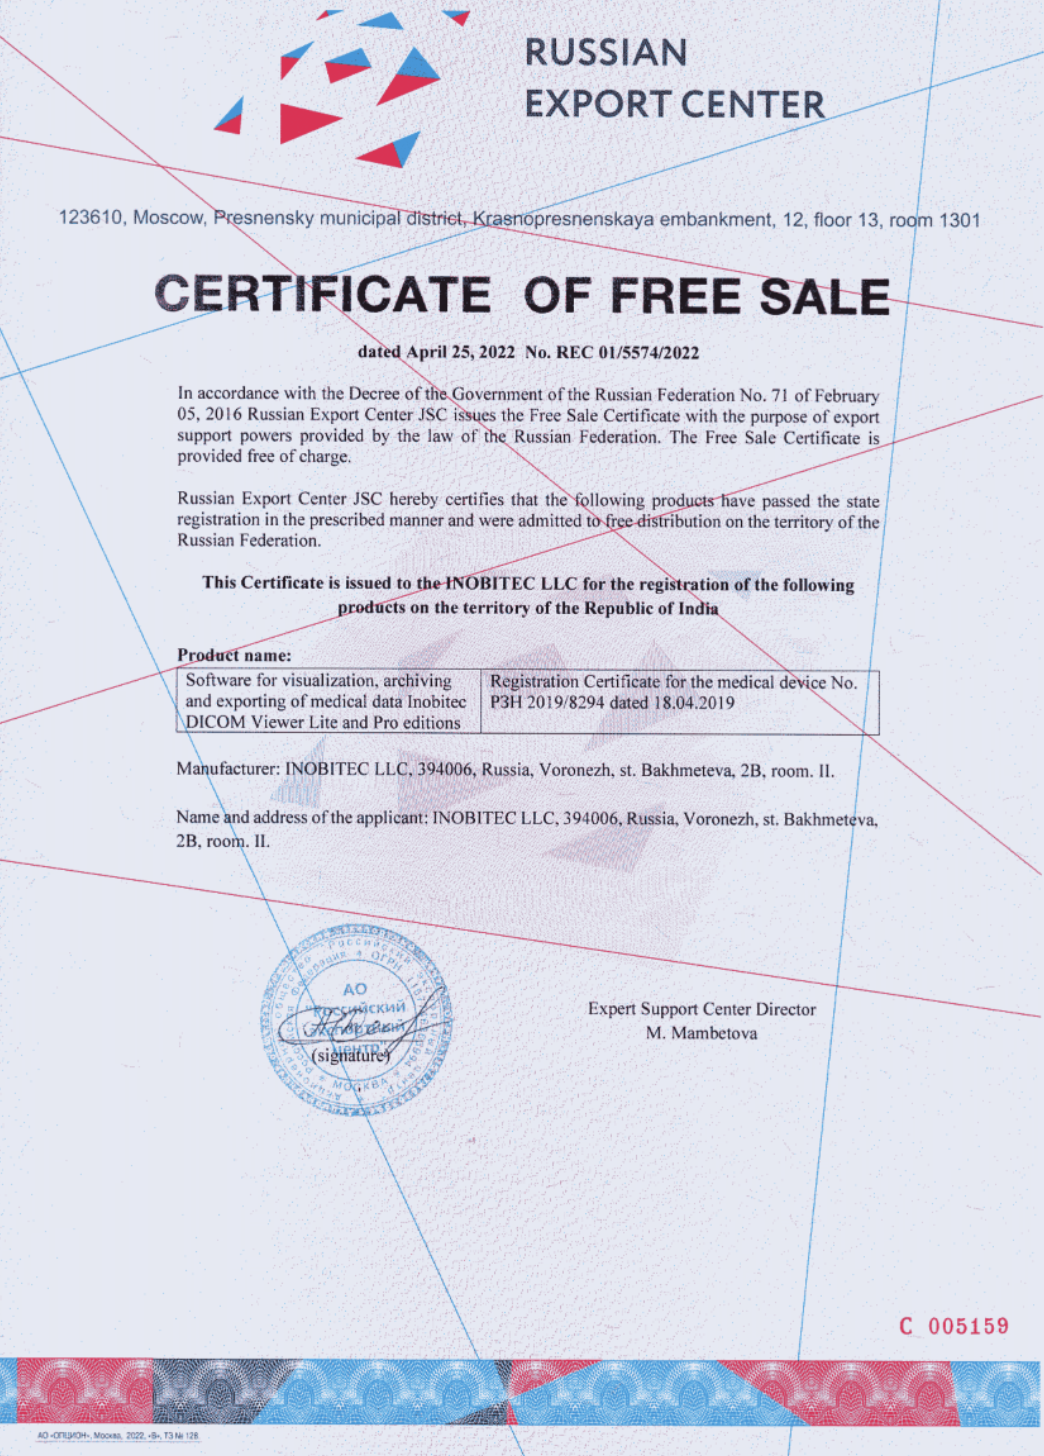 Zertifikat des freien Verkauf No. REC 01/5574/2022